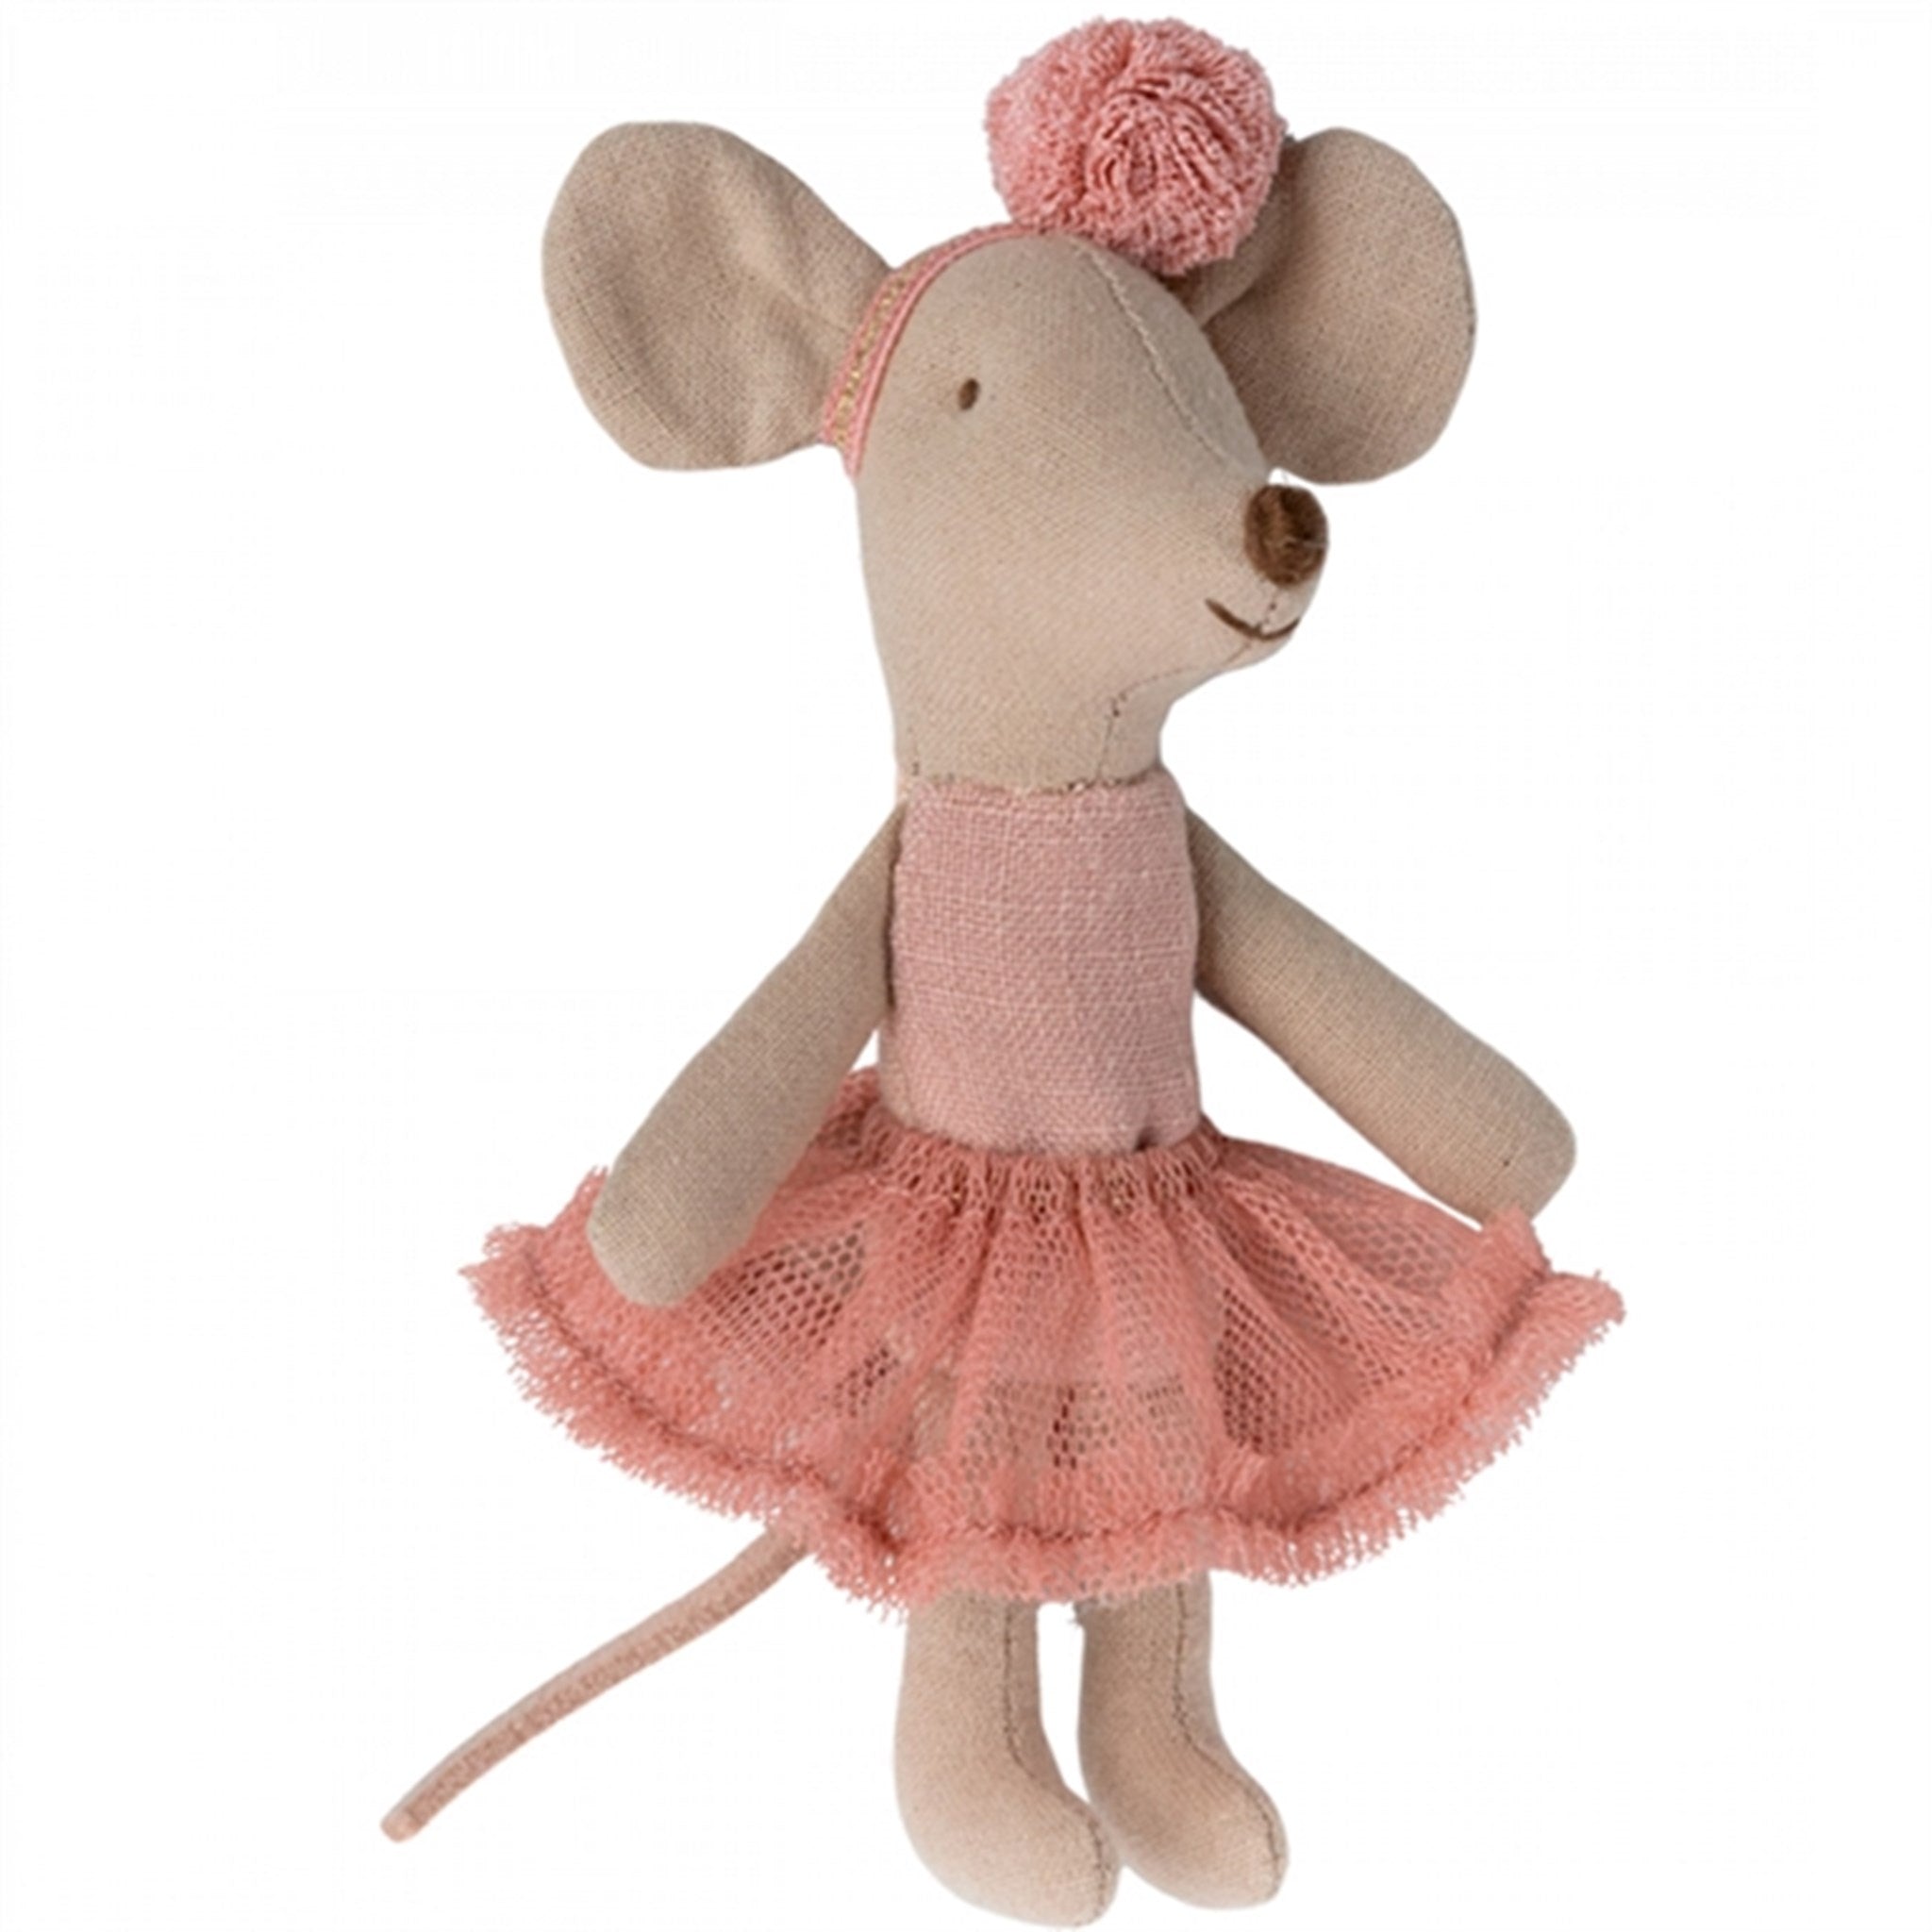 Maileg Ballerina Mouse, Little Sister - Rose